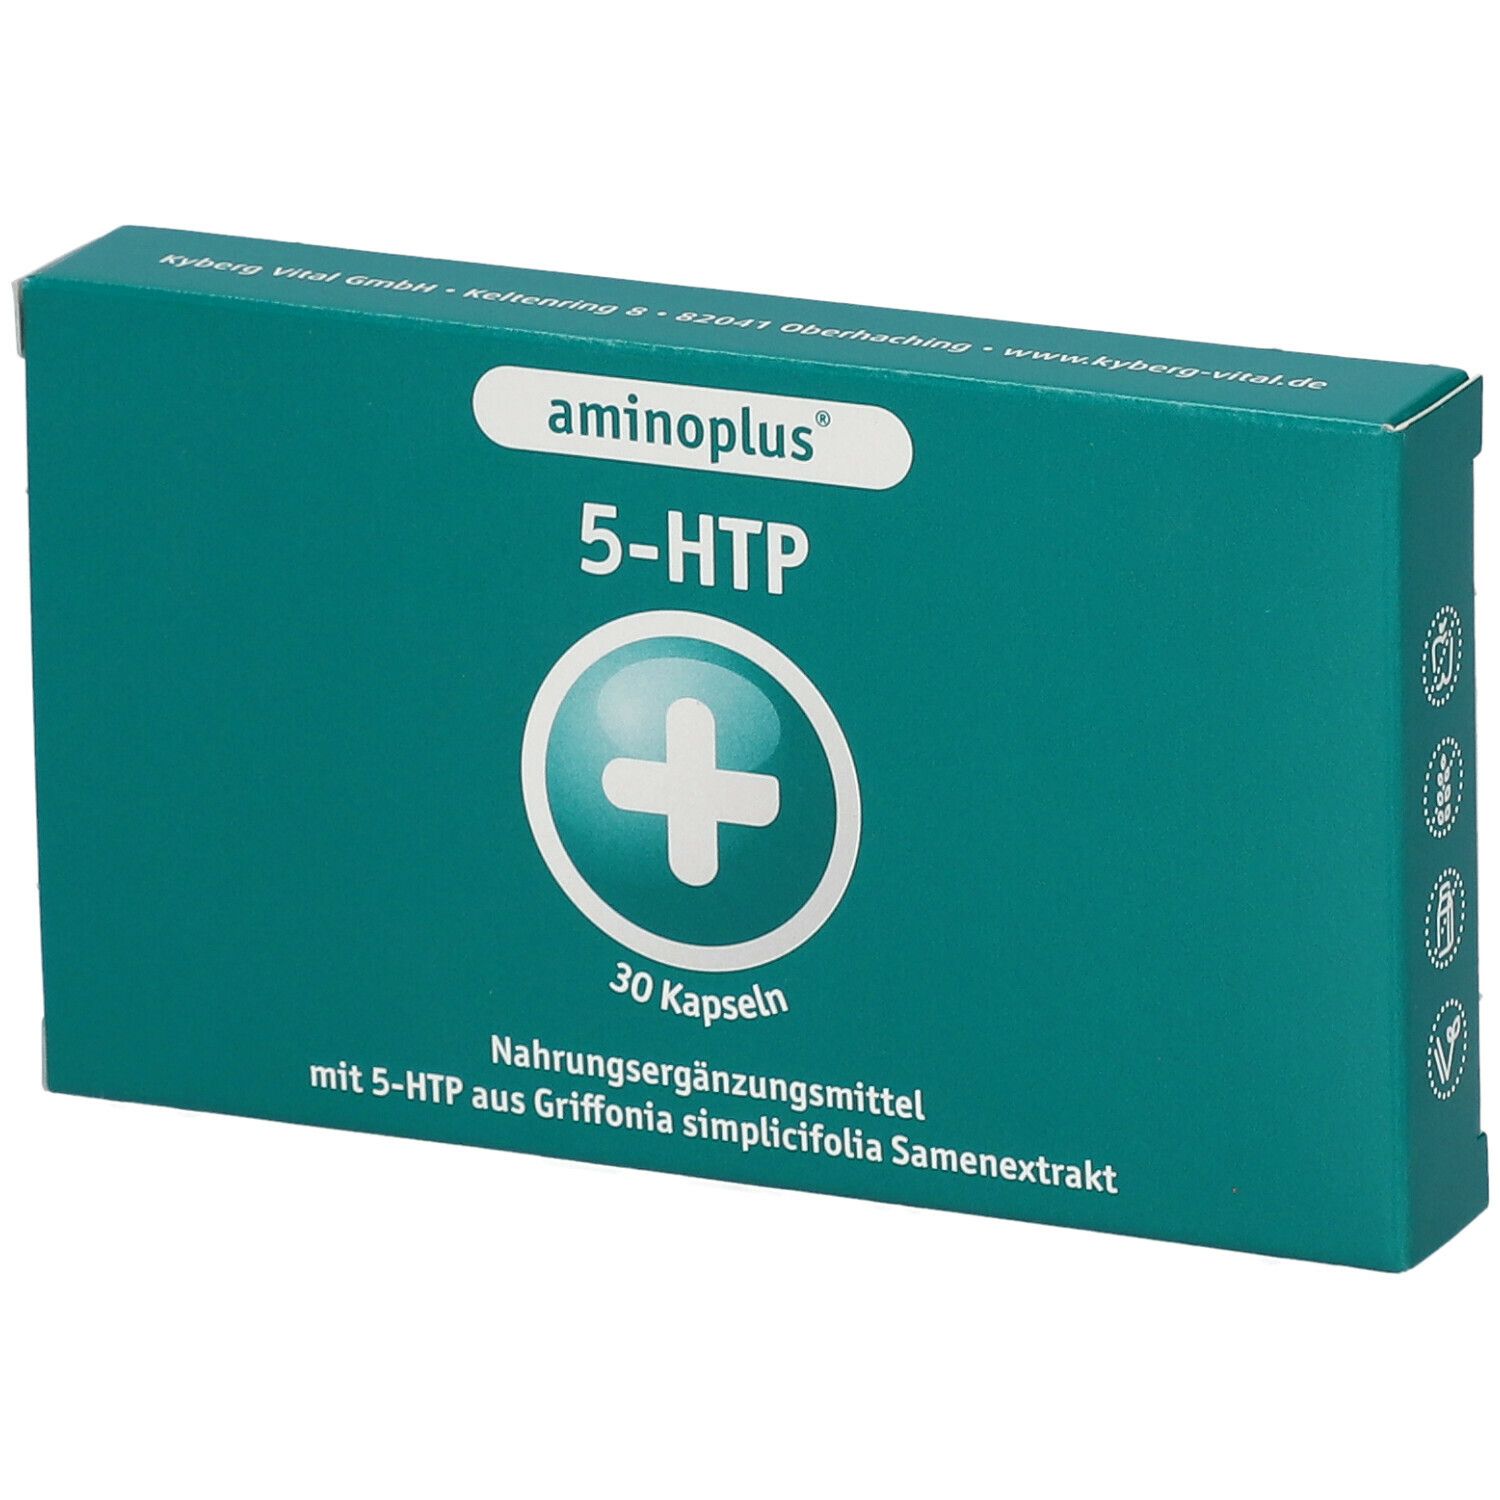 aminoplus® 5-HTP